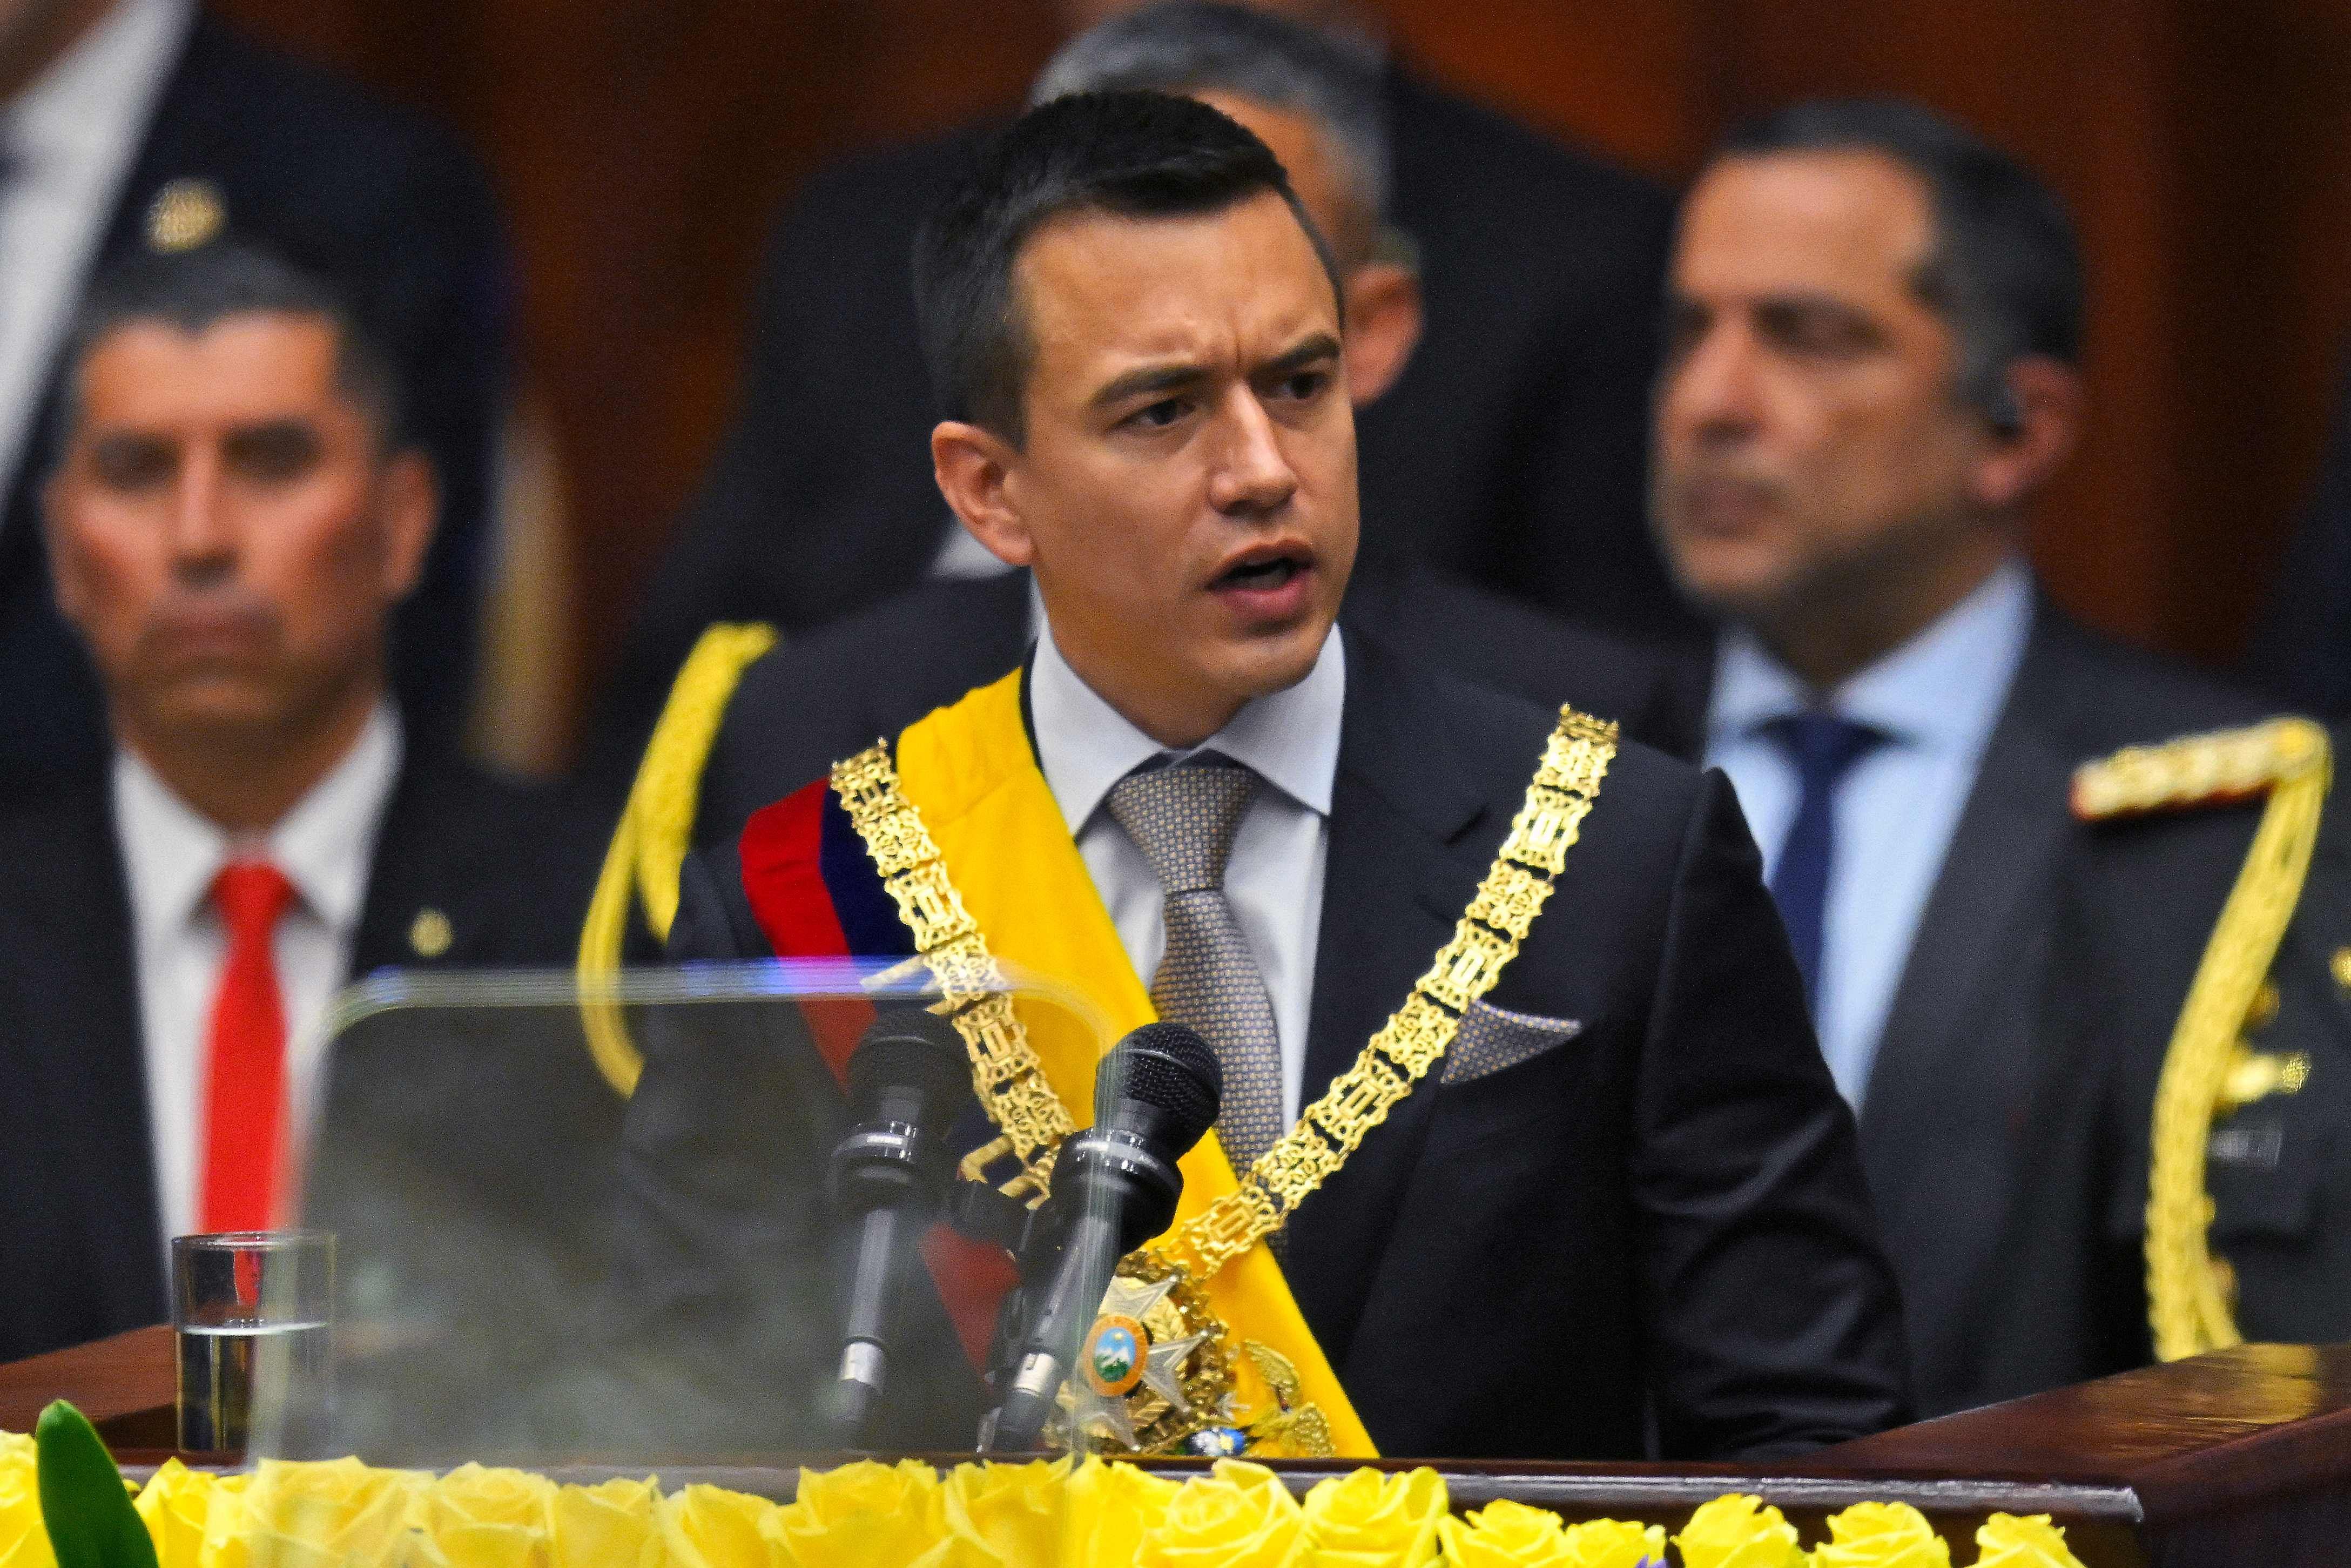 La Asamblea Nacional de Ecuador, con 86 votos, rechazó y condenó las declaraciones de Daniel Noboa, calificándolas de 'inoportunas, improcedentes, inapropiadas, inconvenientes y desafortunadas'.
